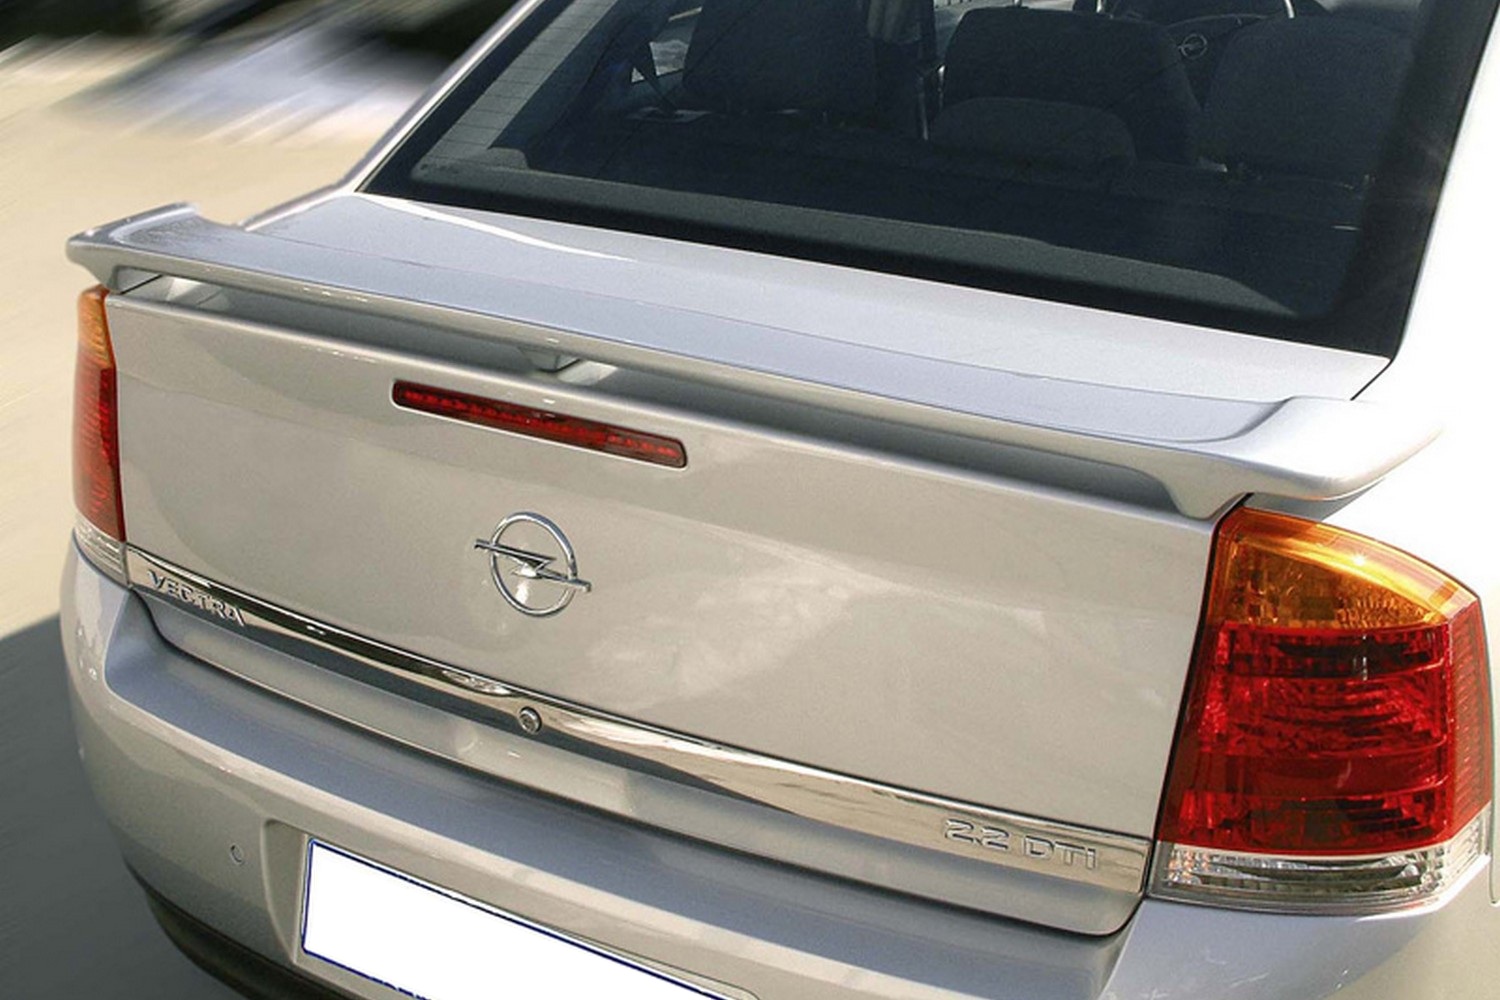 https://www.carparts-expert.com/images/stories/virtuemart/product/ope4vesu-opel-vectra-c-2002-2008-5-door-hatchback-trunk-spoiler-1.jpg